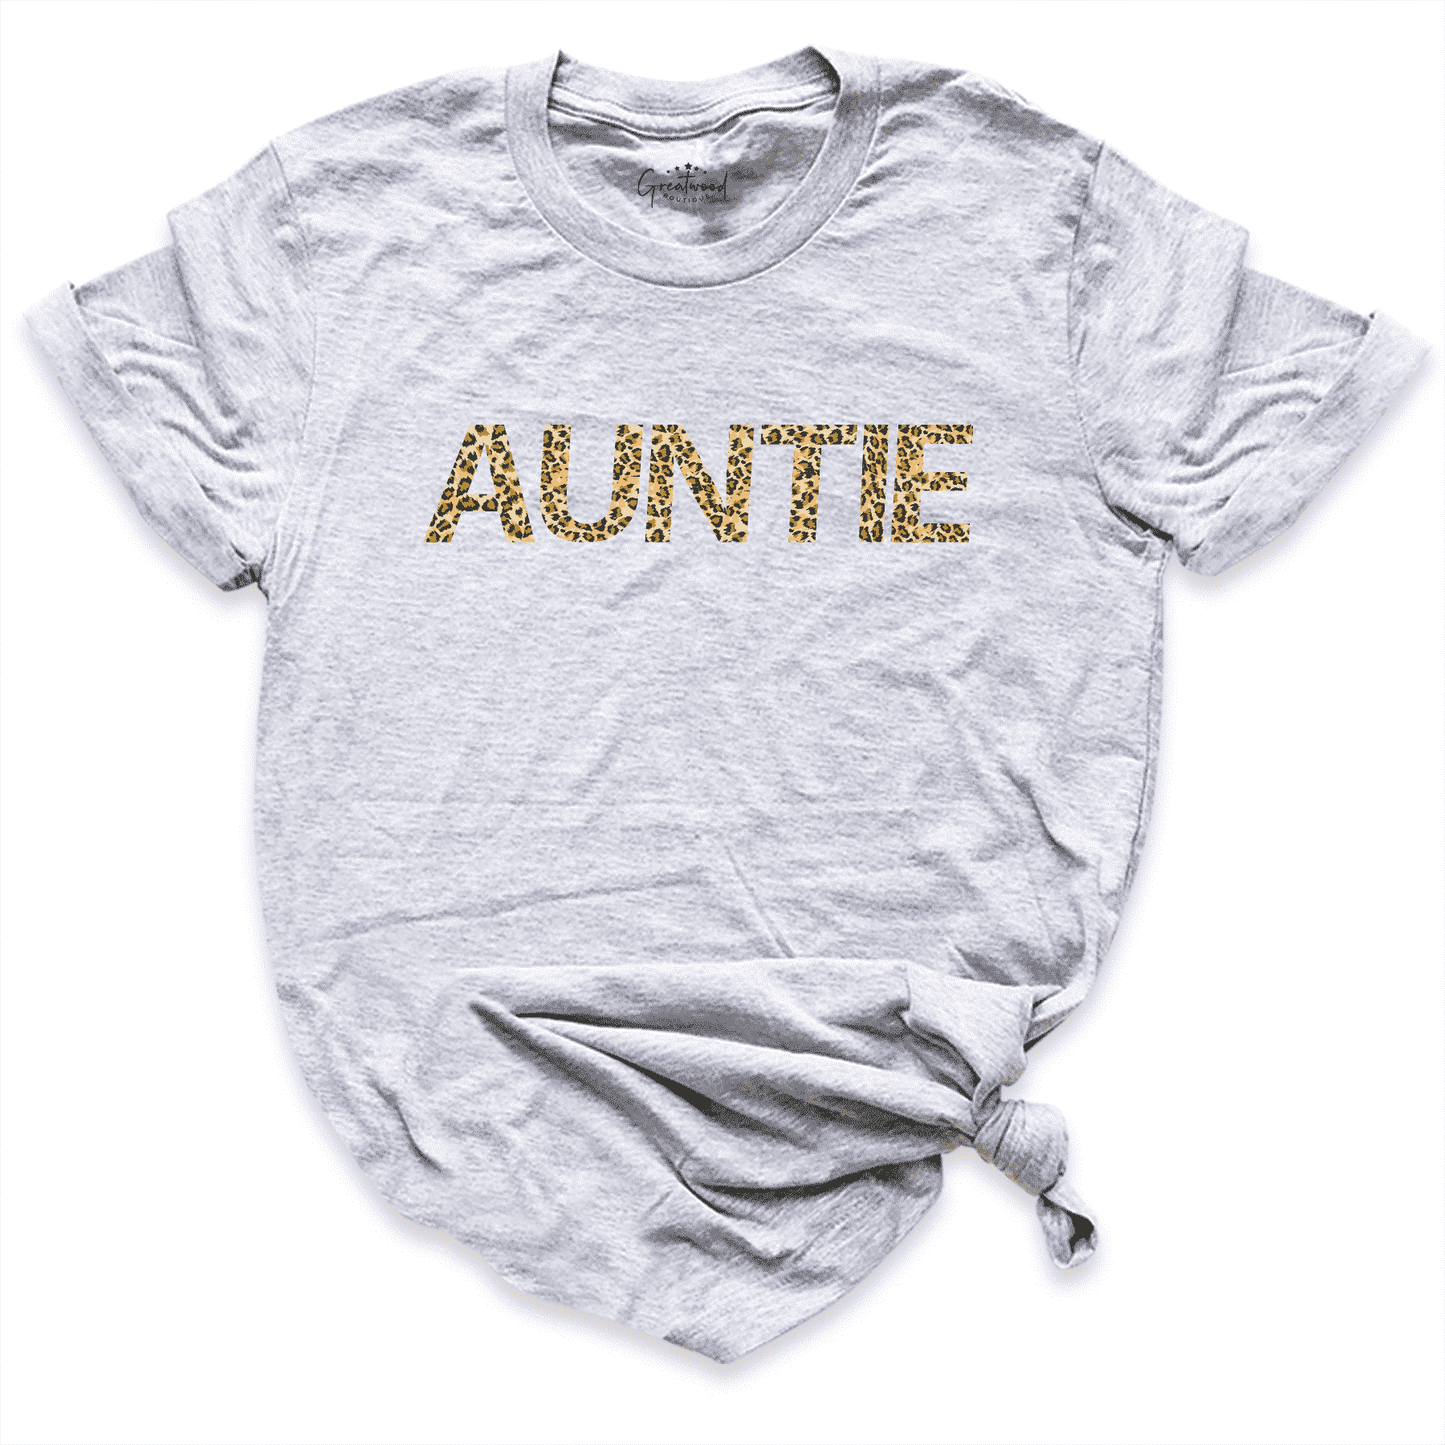 Leopard Auntie Shirt